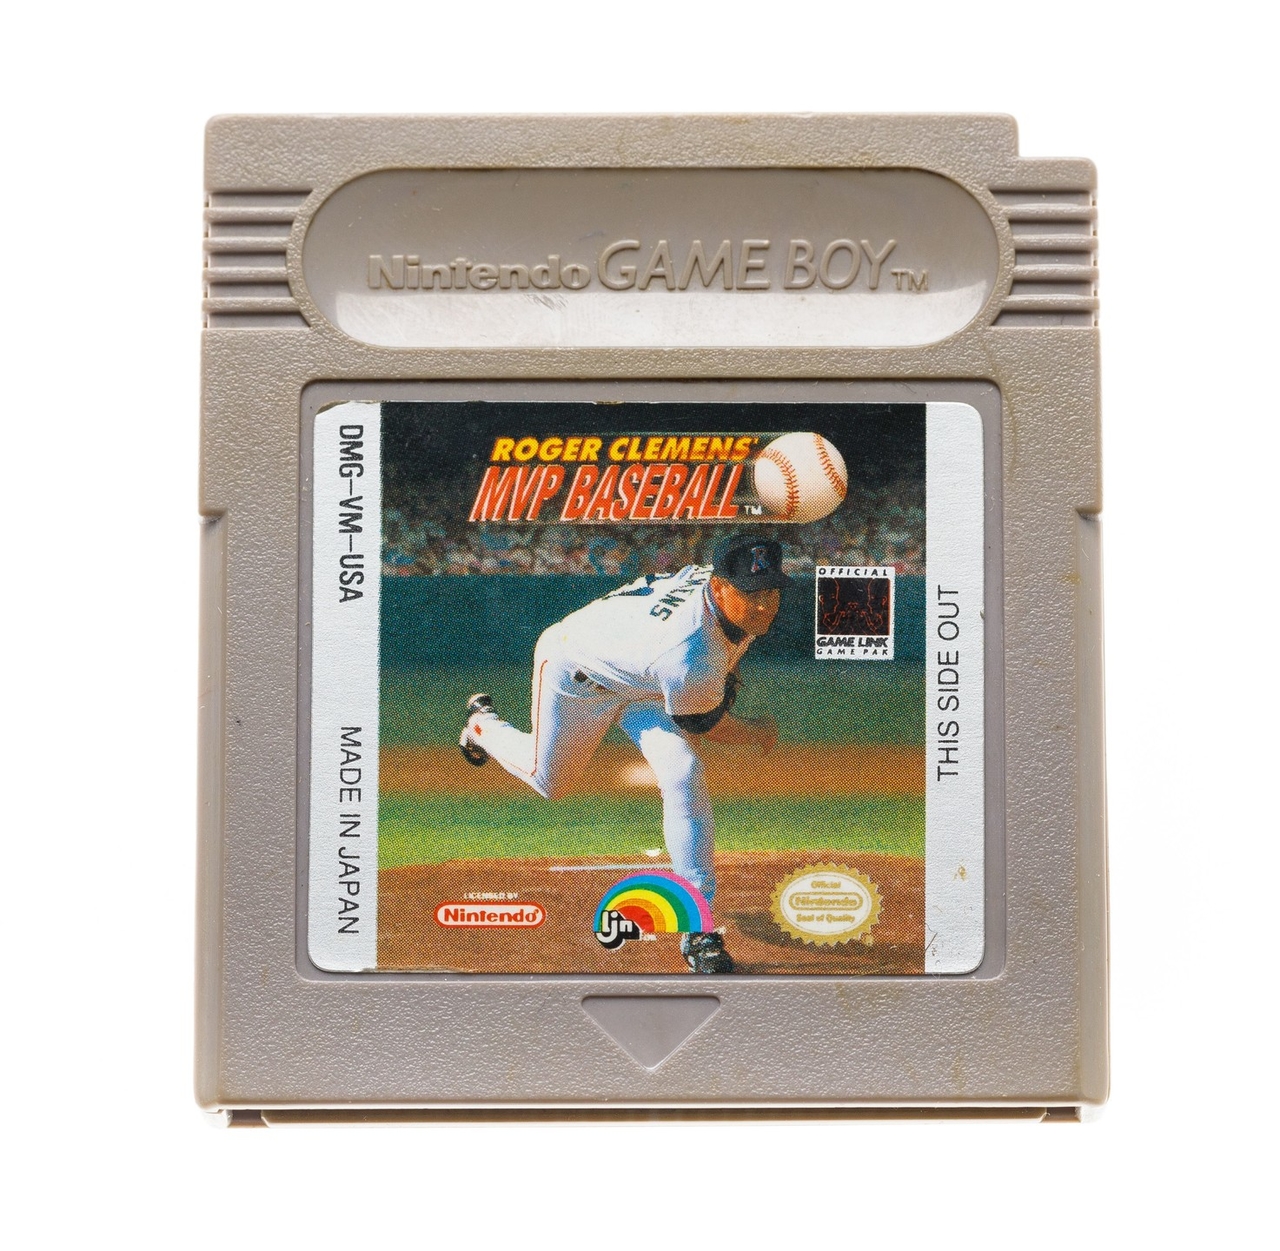 Roger Clemens MVP Baseball Kopen | Gameboy Classic Games